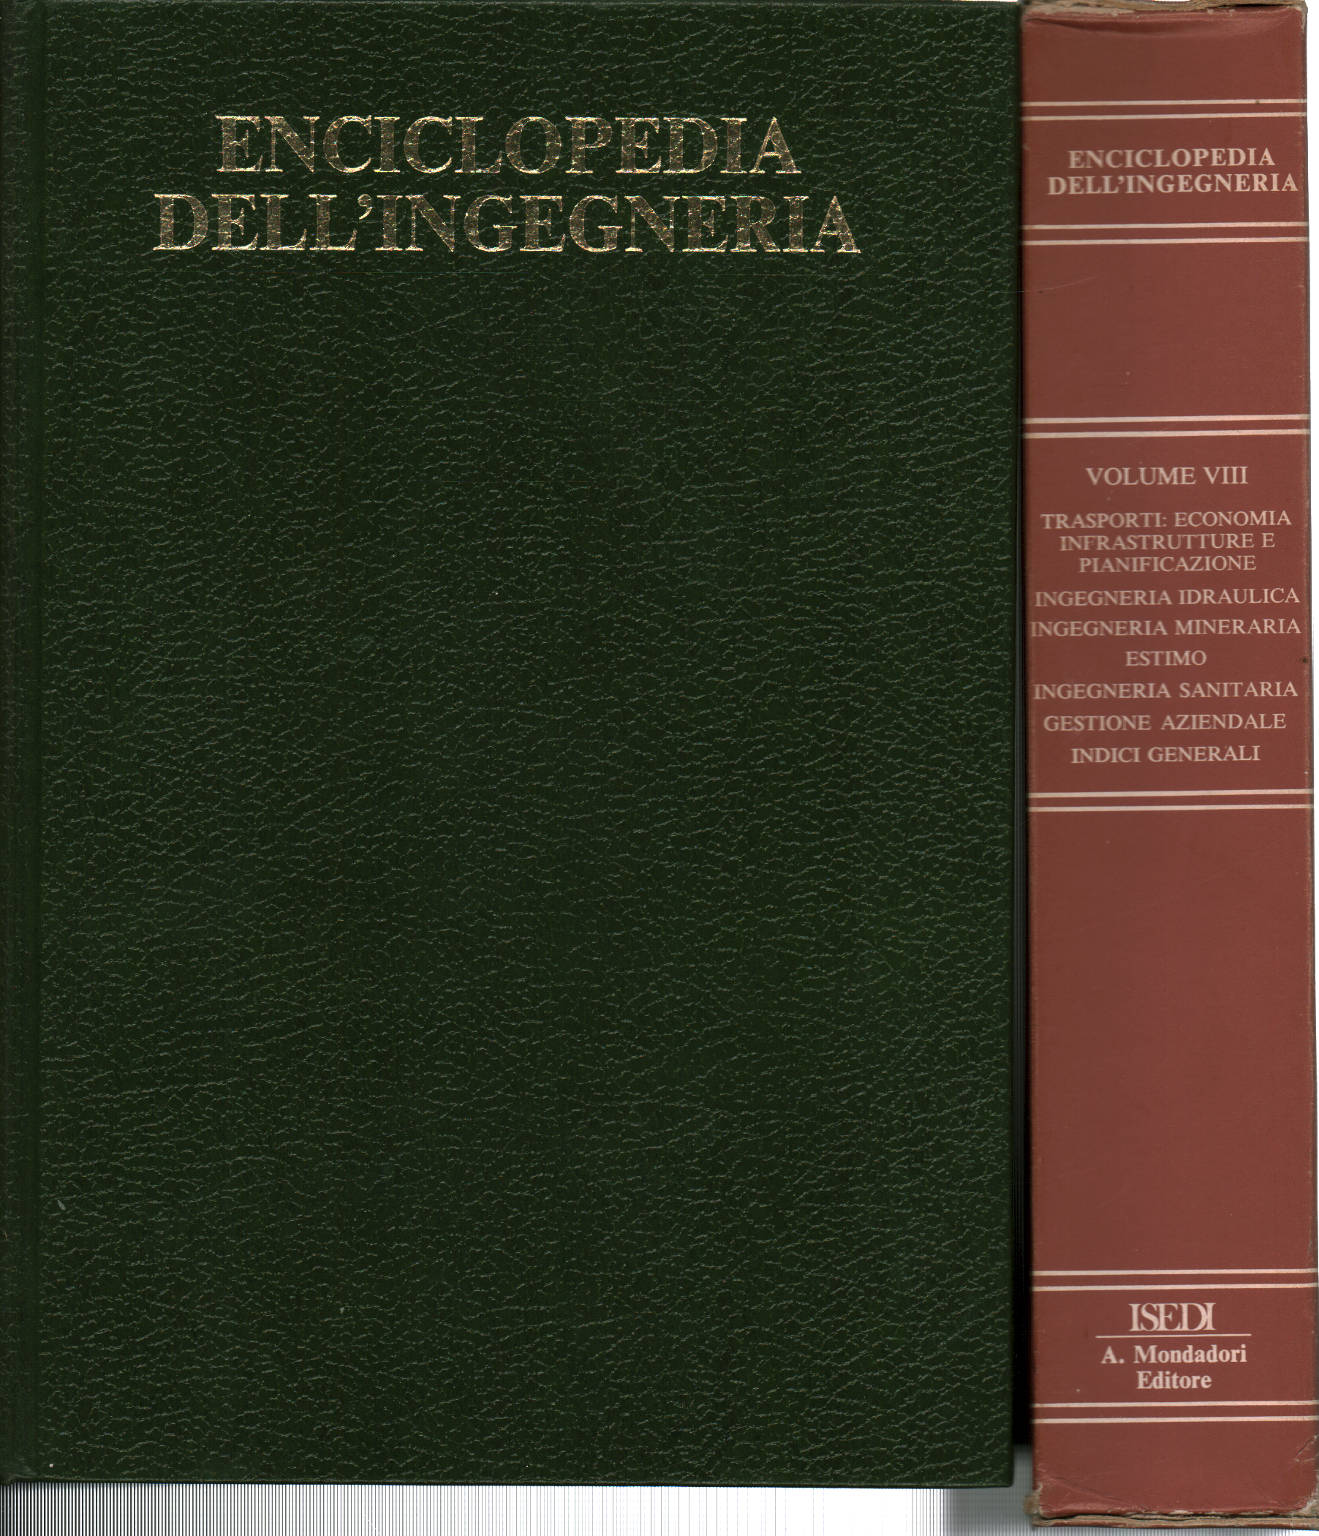 Enciclopedia dell'ingegneria. Volume VIII, Mario Lenti